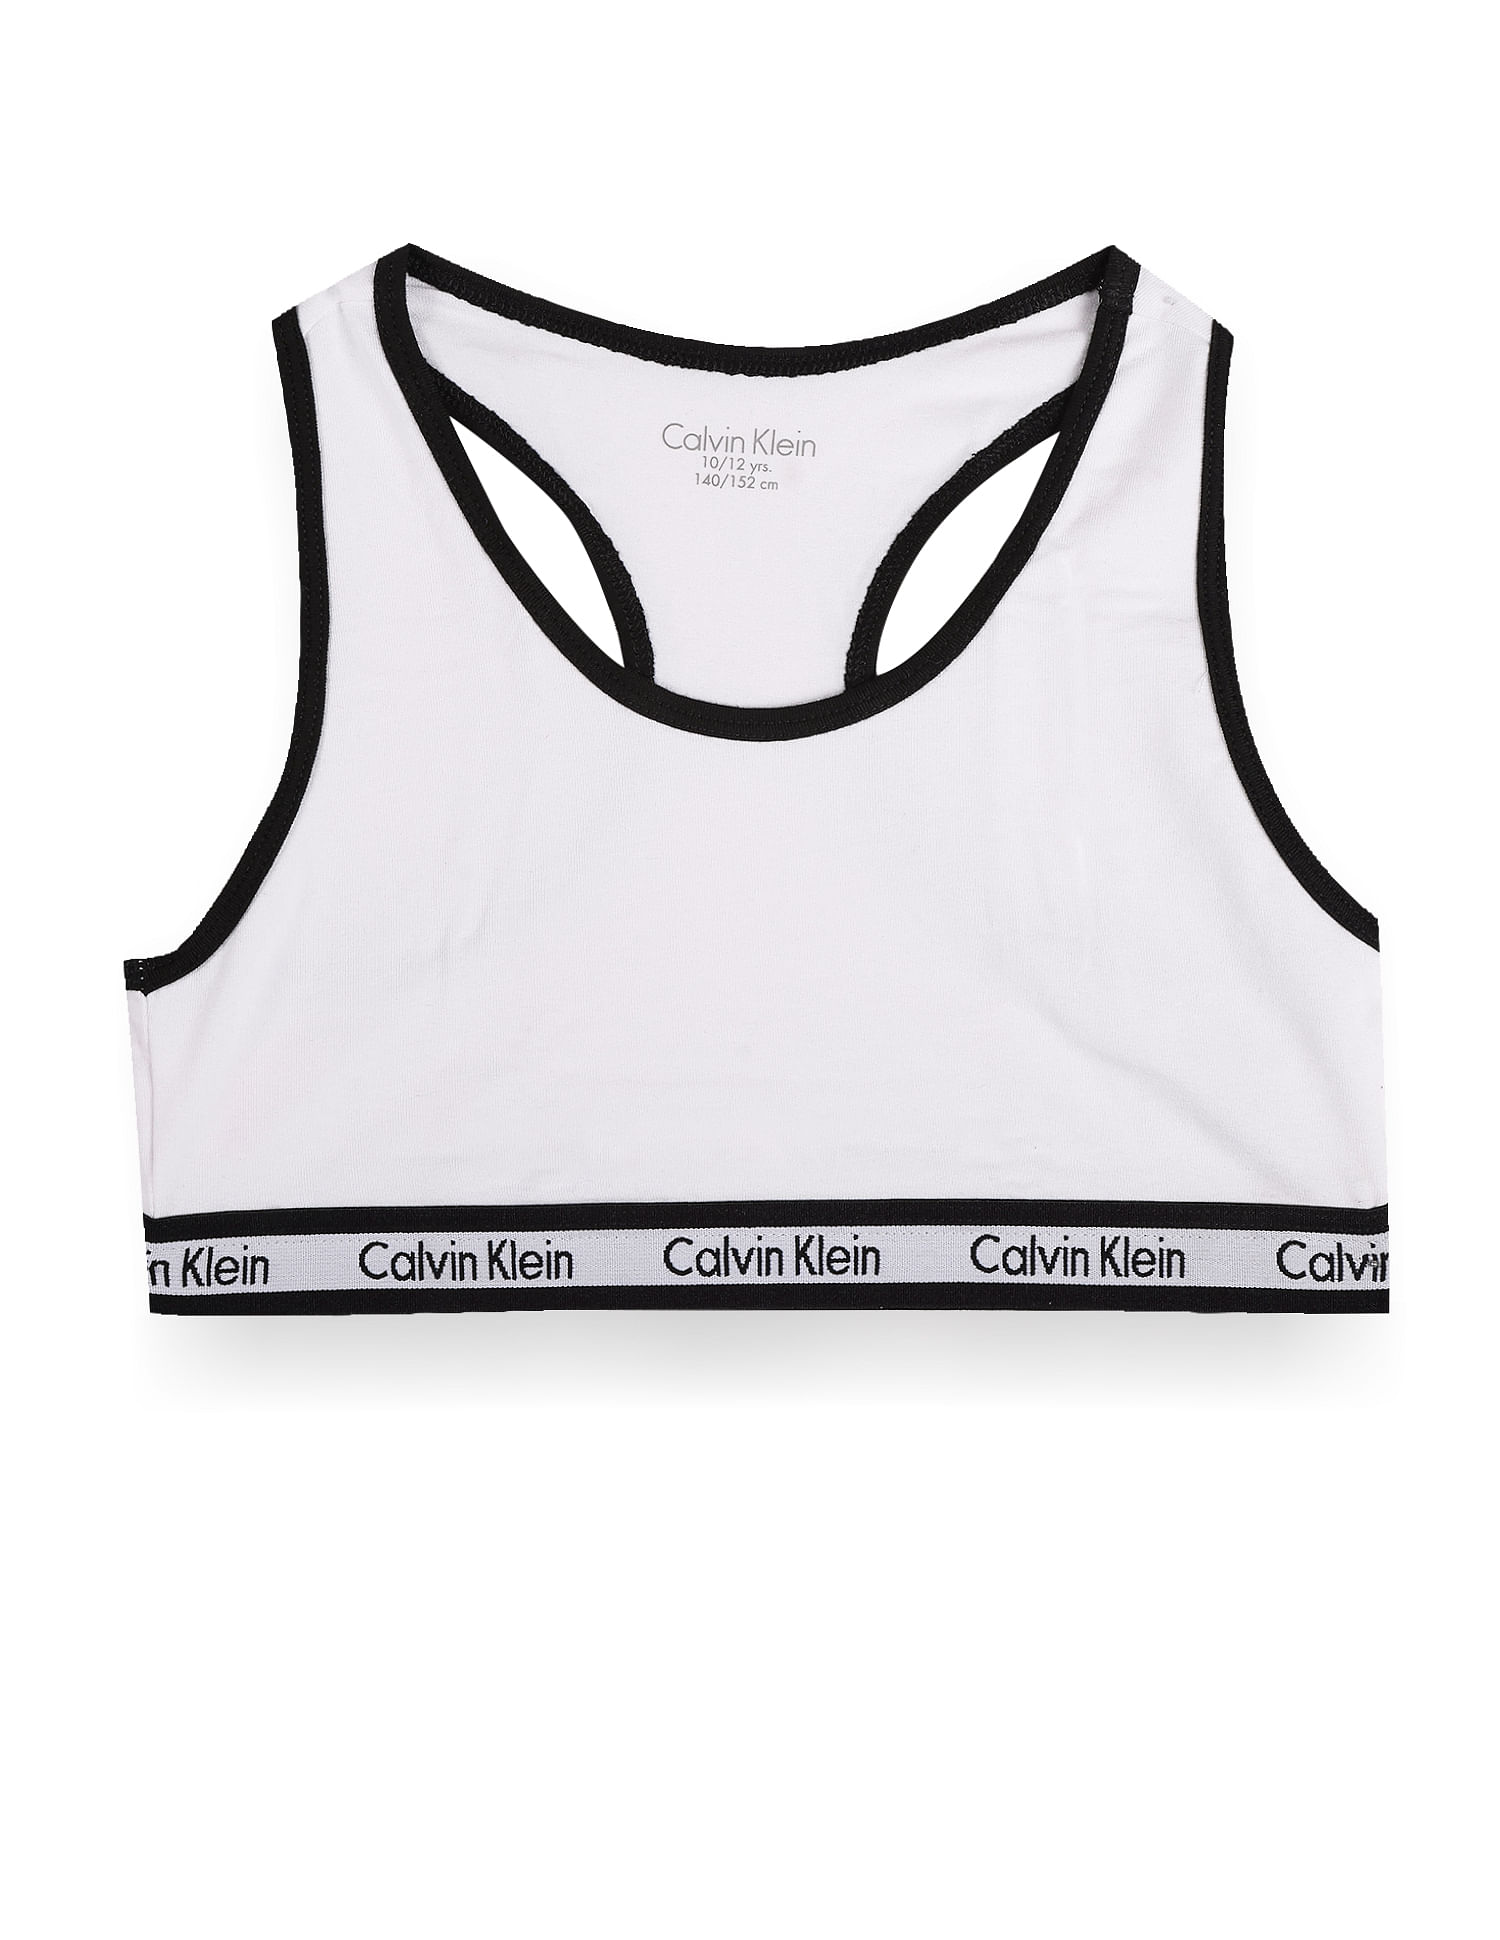 Calvin Klein Kids' Assorted 3-Pack Stretch Cotton Bralettes